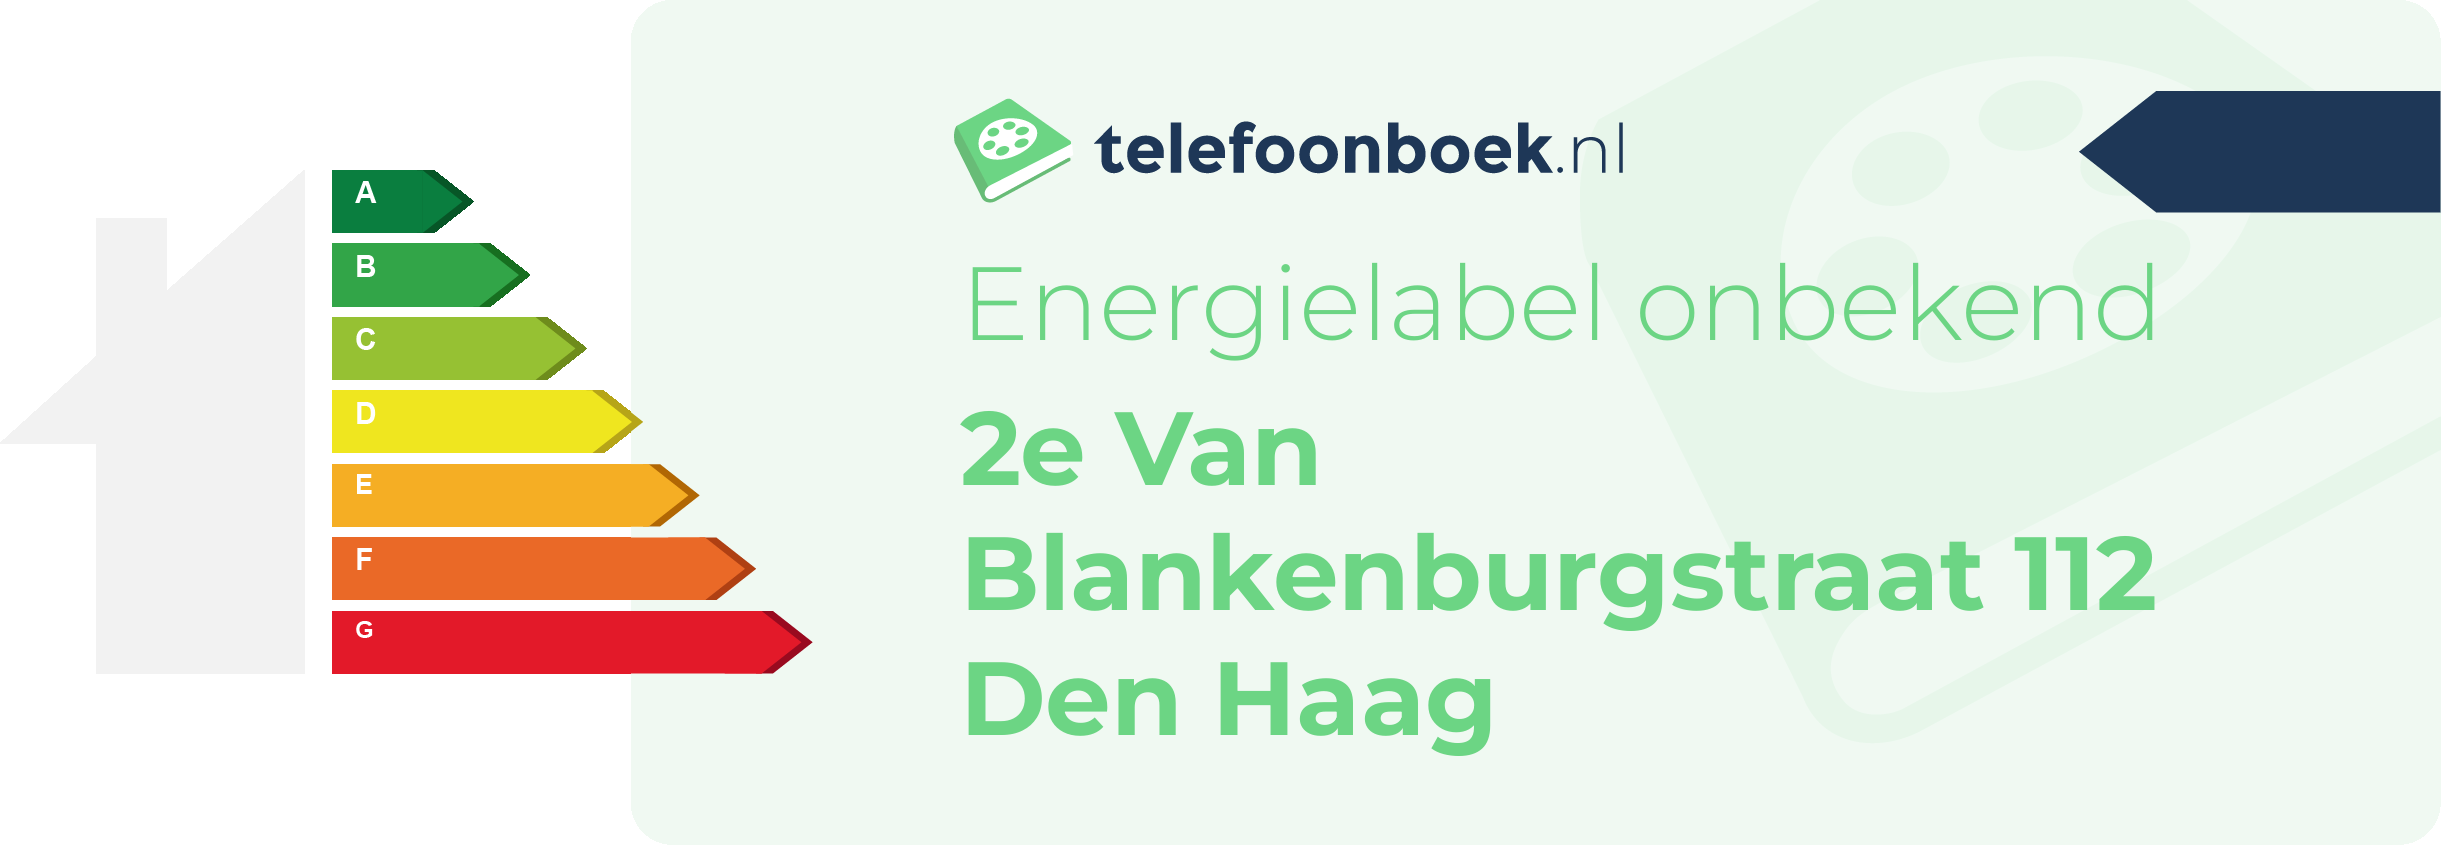 Energielabel 2e Van Blankenburgstraat 112 Den Haag